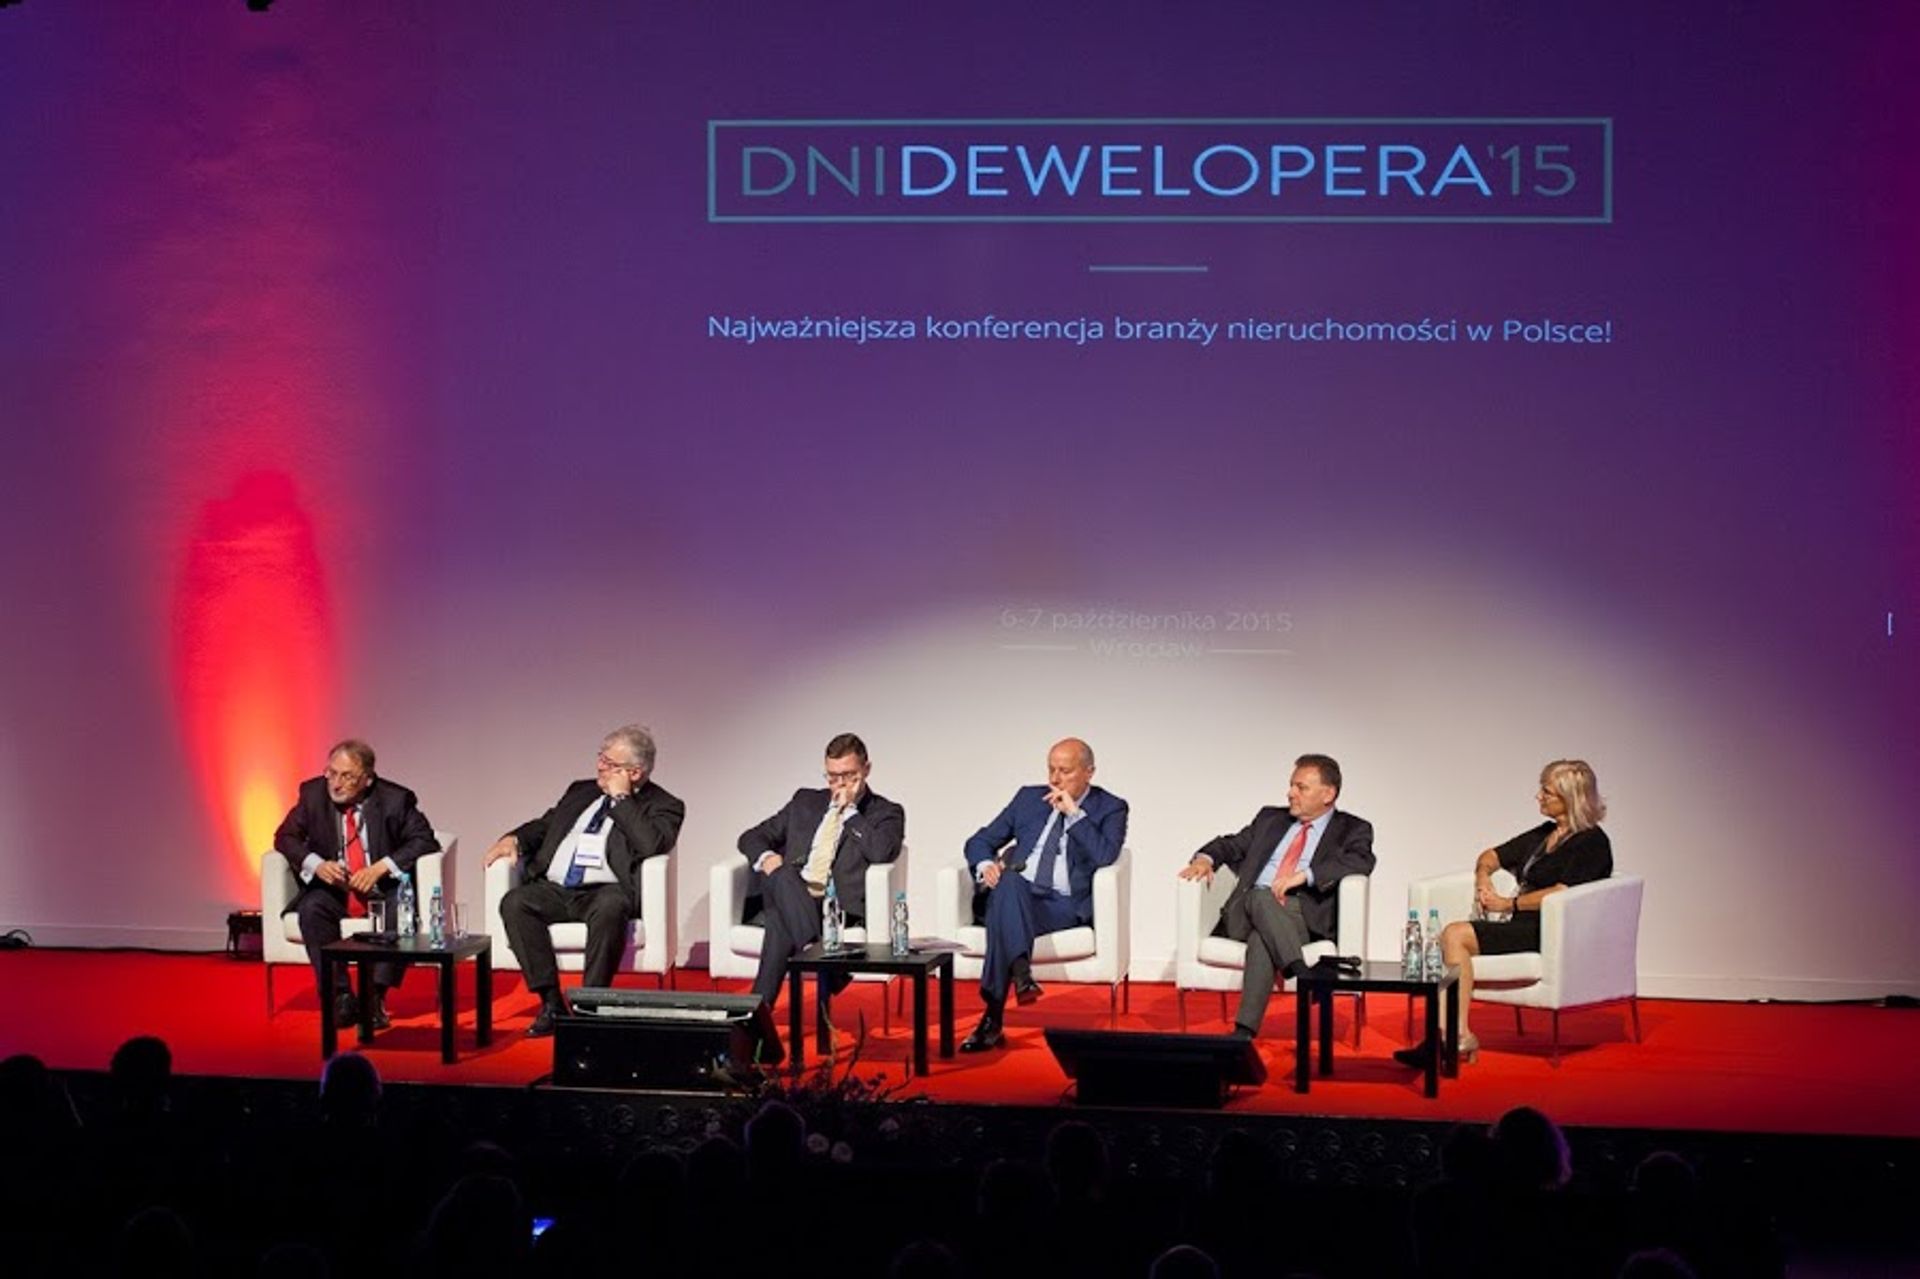  We Wrocławiu zakończyły się Dni Dewelopera 2015. Podczas konferencji branżowi eksperci dyskutowali o kierunkach rozwoju polskich miast w najbliższych latach.